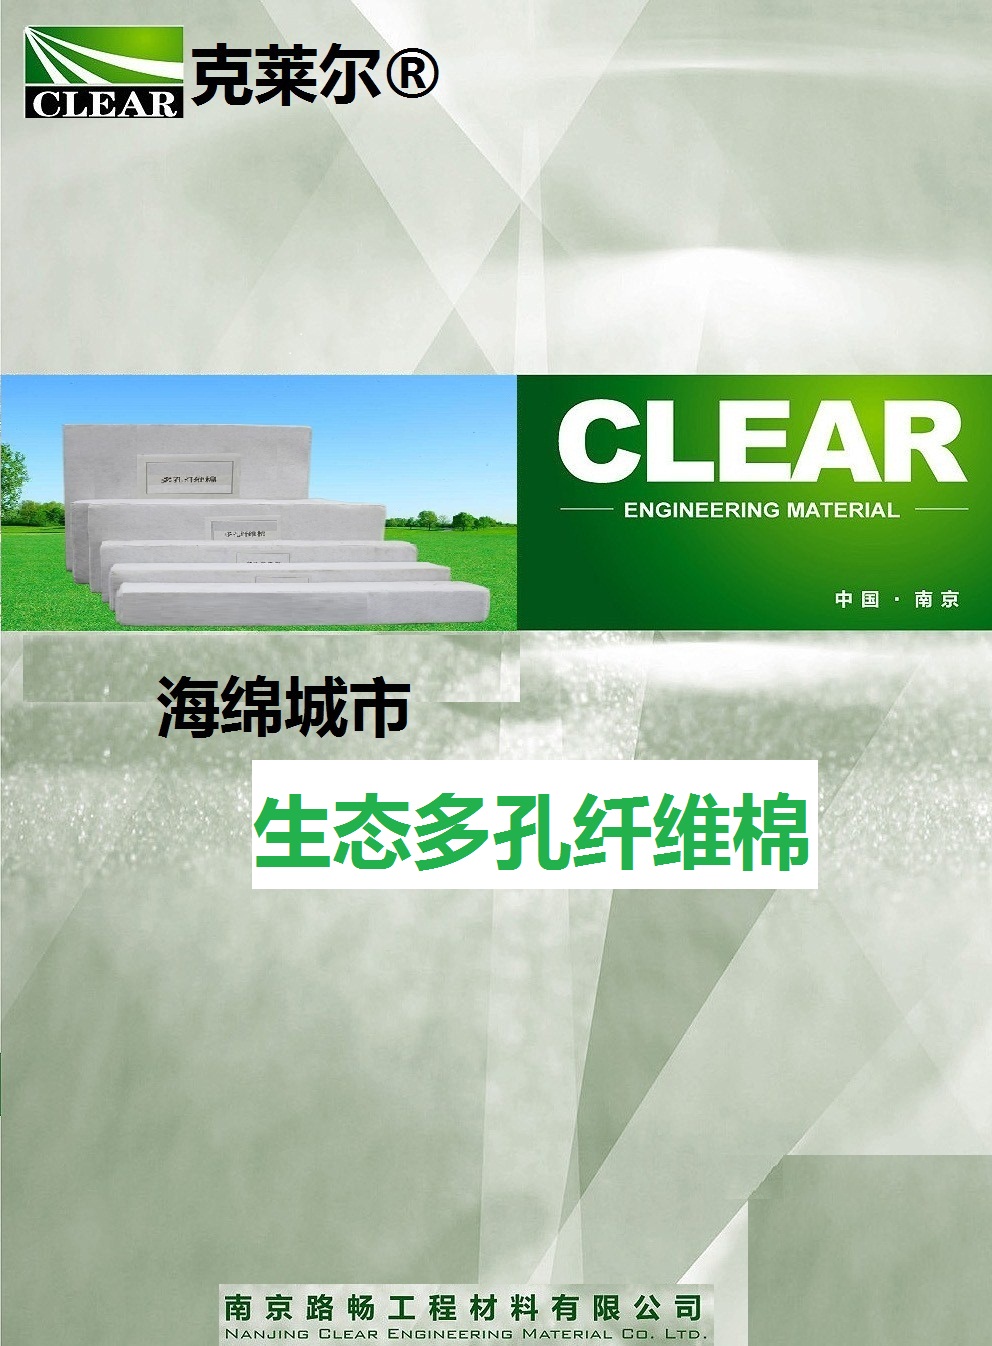 重庆万州区大批量生态多孔棉低价招代理促销中